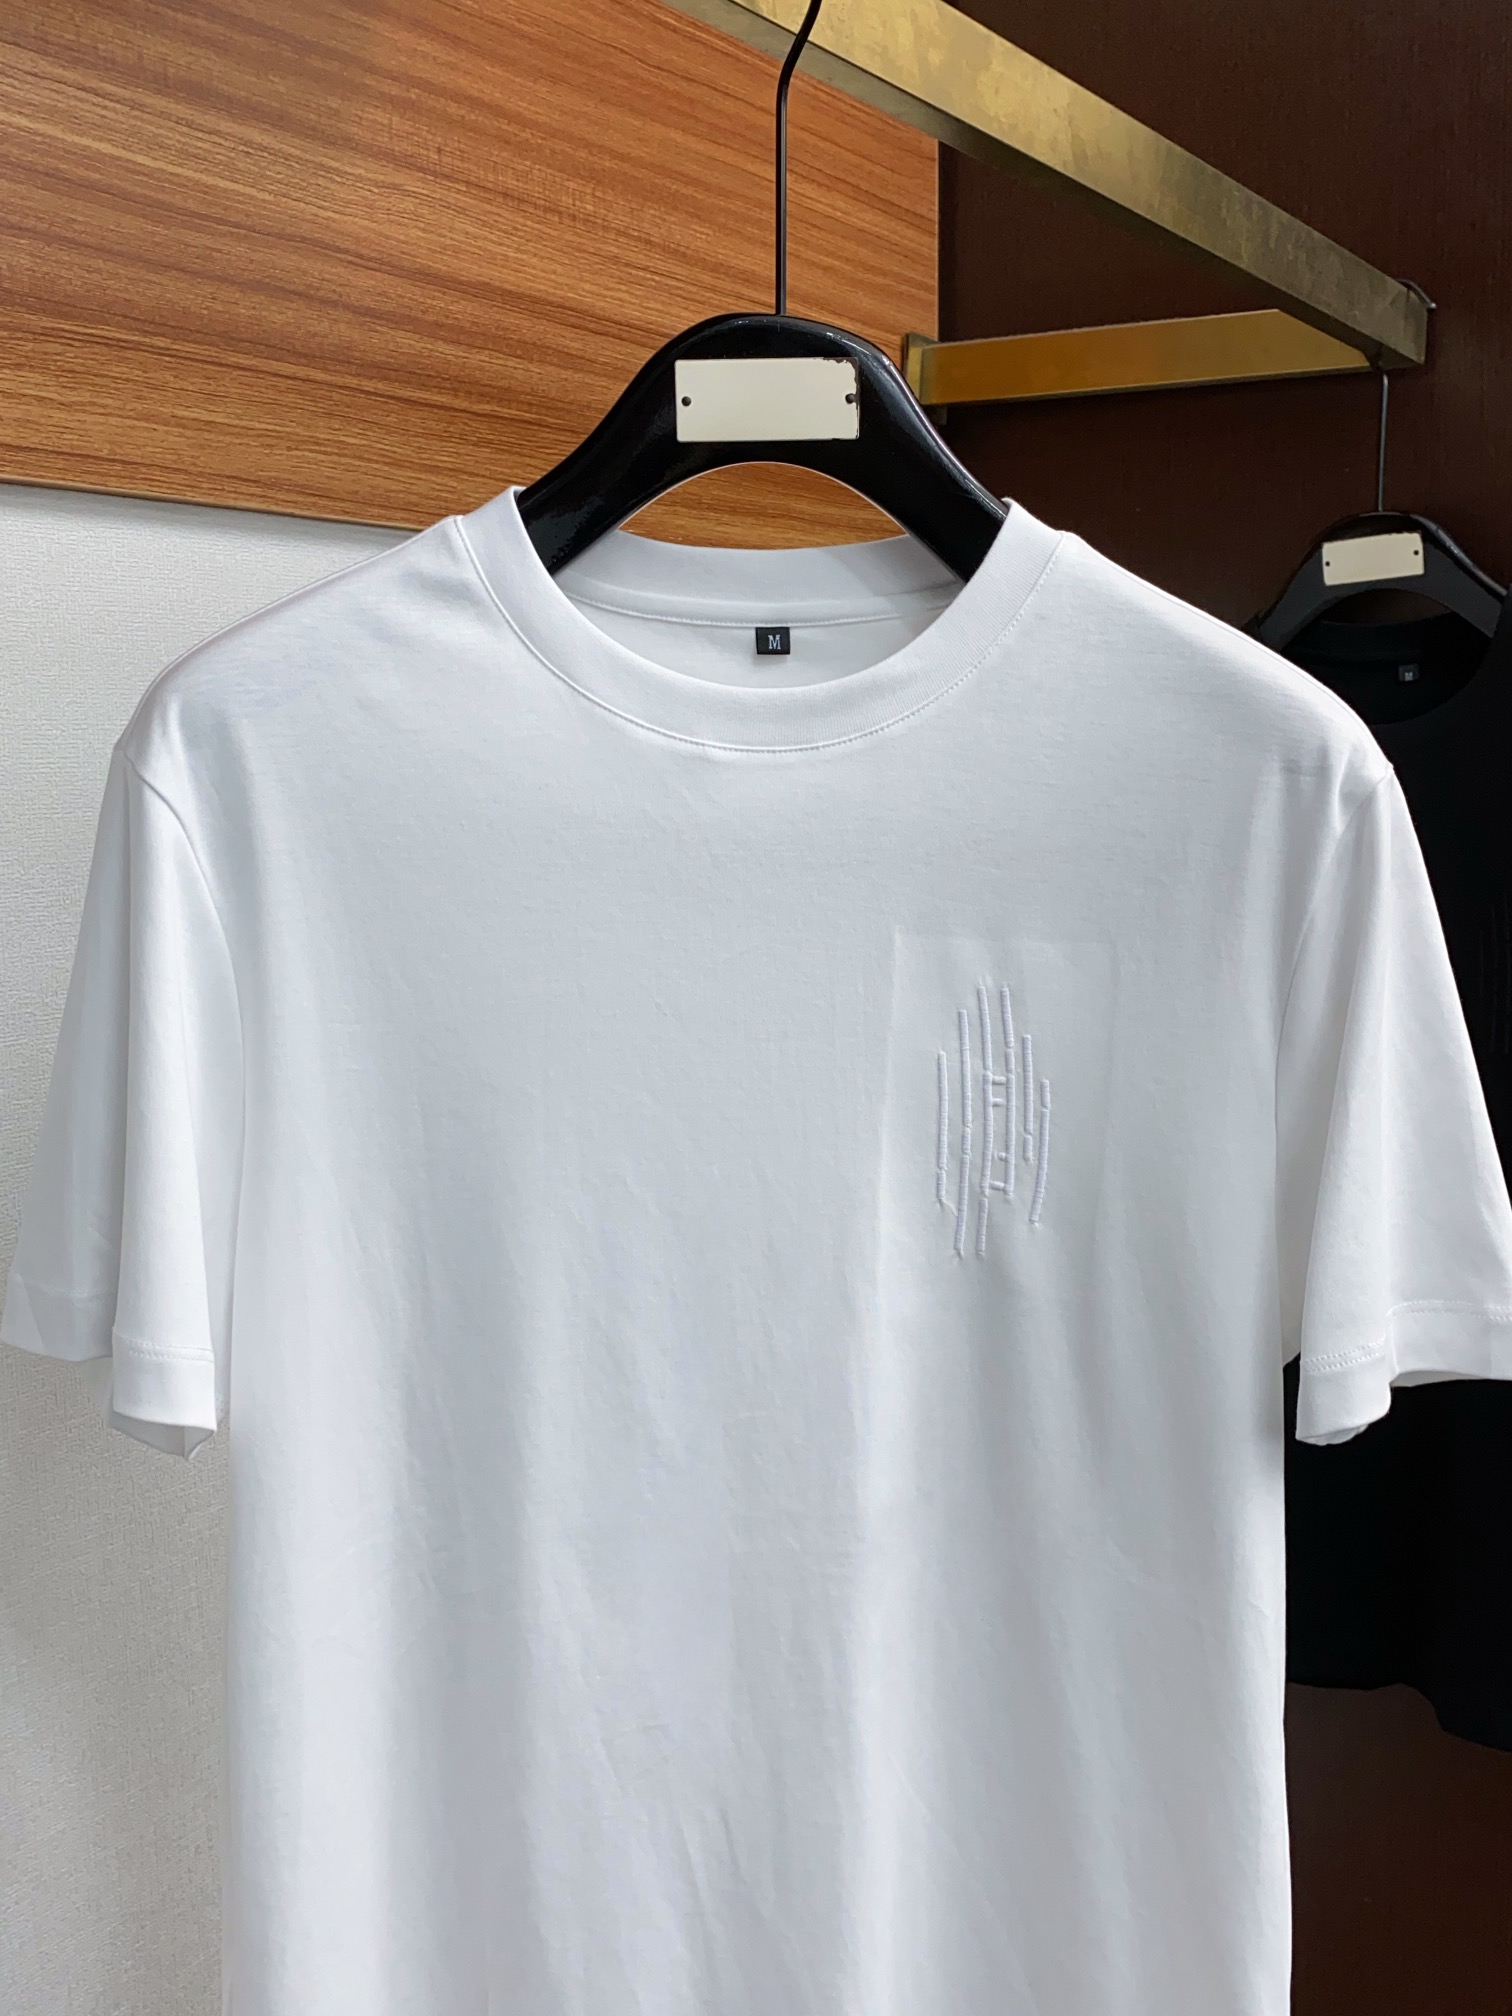 fendi ワイシャツスーパーコピー トップス 綿100% プリント 短袖 ゆったり シンプル 柔らかい メンズ ホワイト_2